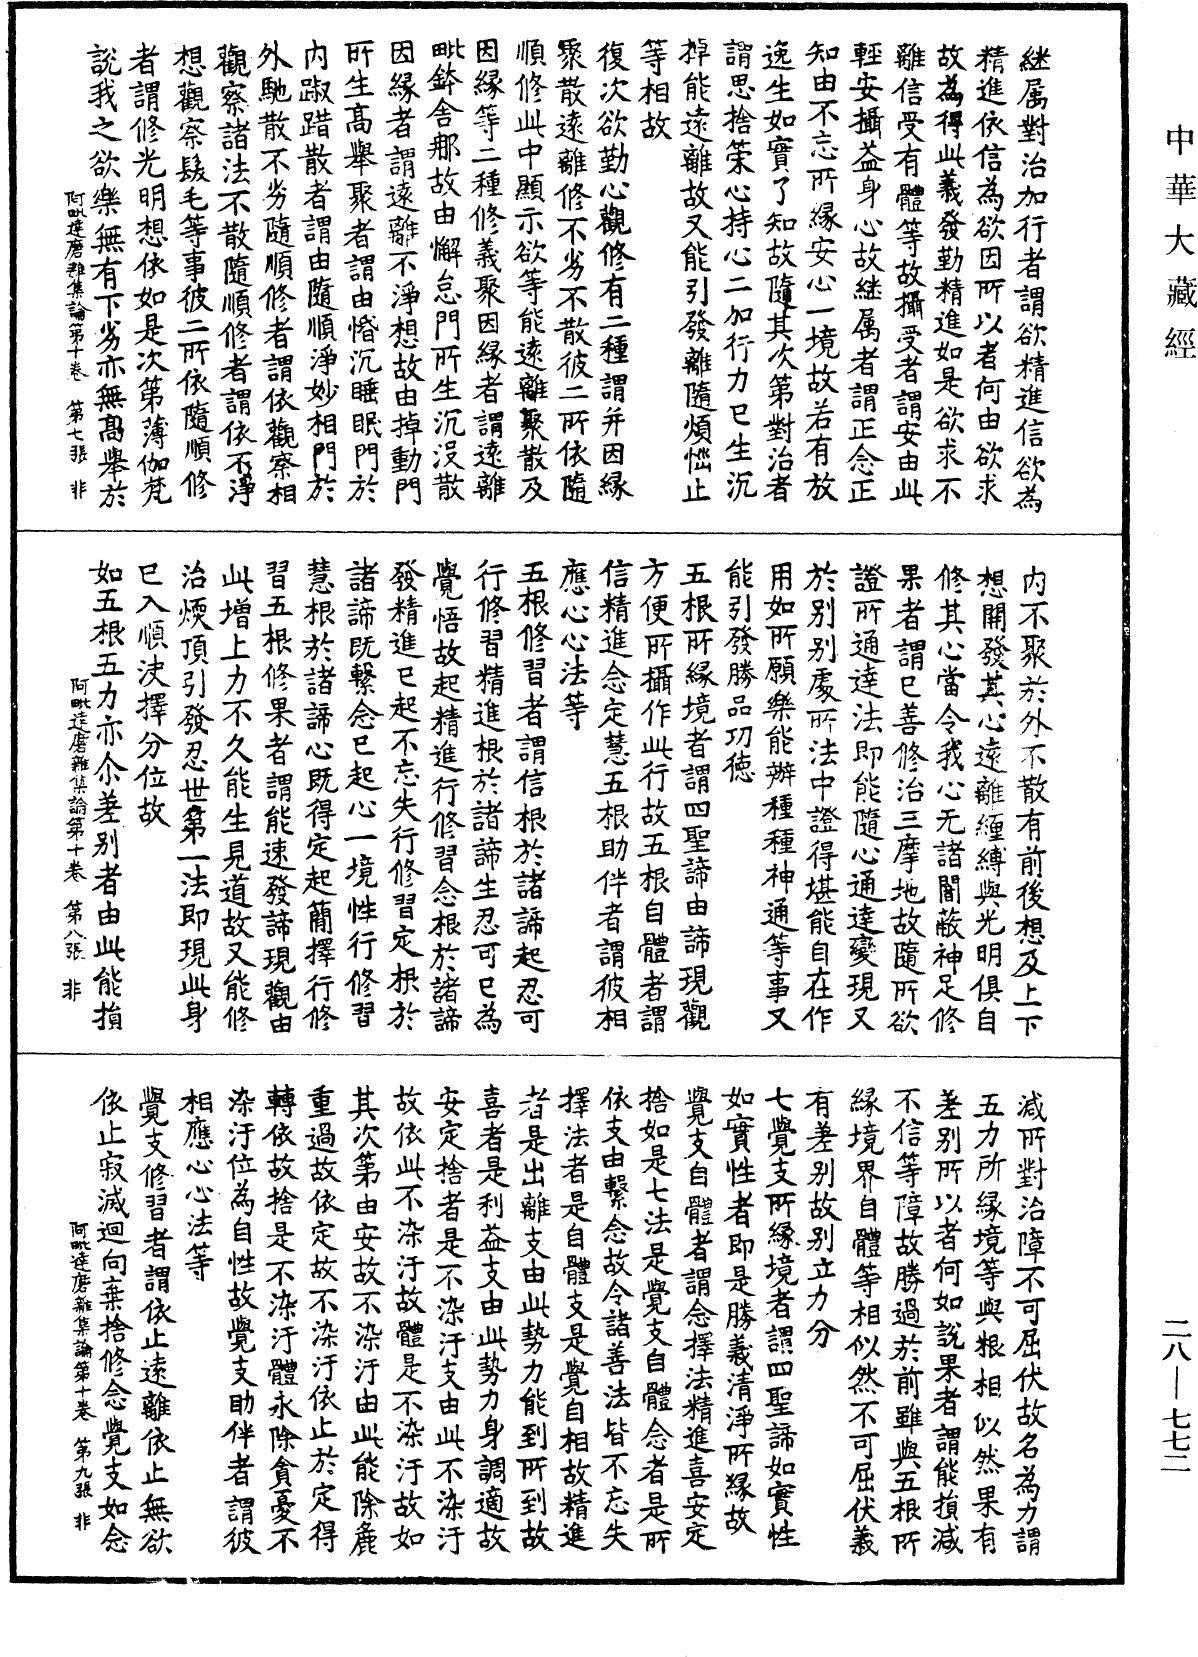 大乘阿毗达磨杂集论《中华大藏经》_第28册_第0772页